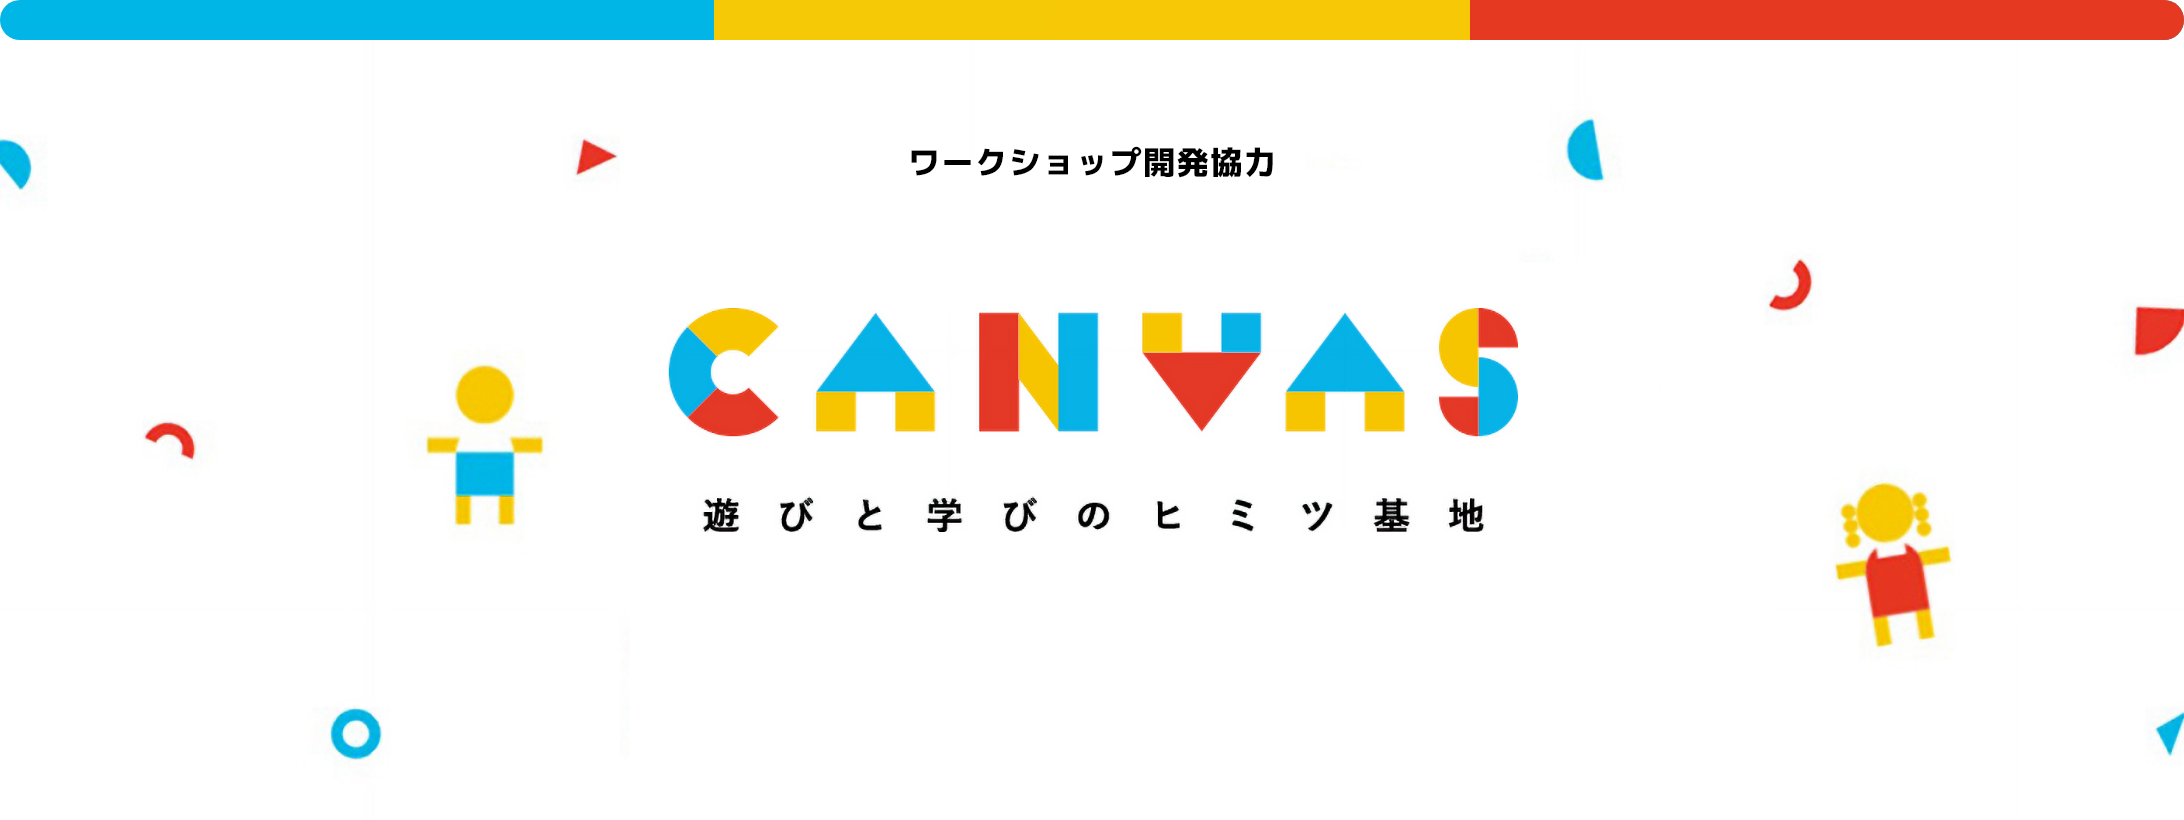 ワークショップ開発協力 CANVAS 遊びと学びのヒミツ基地